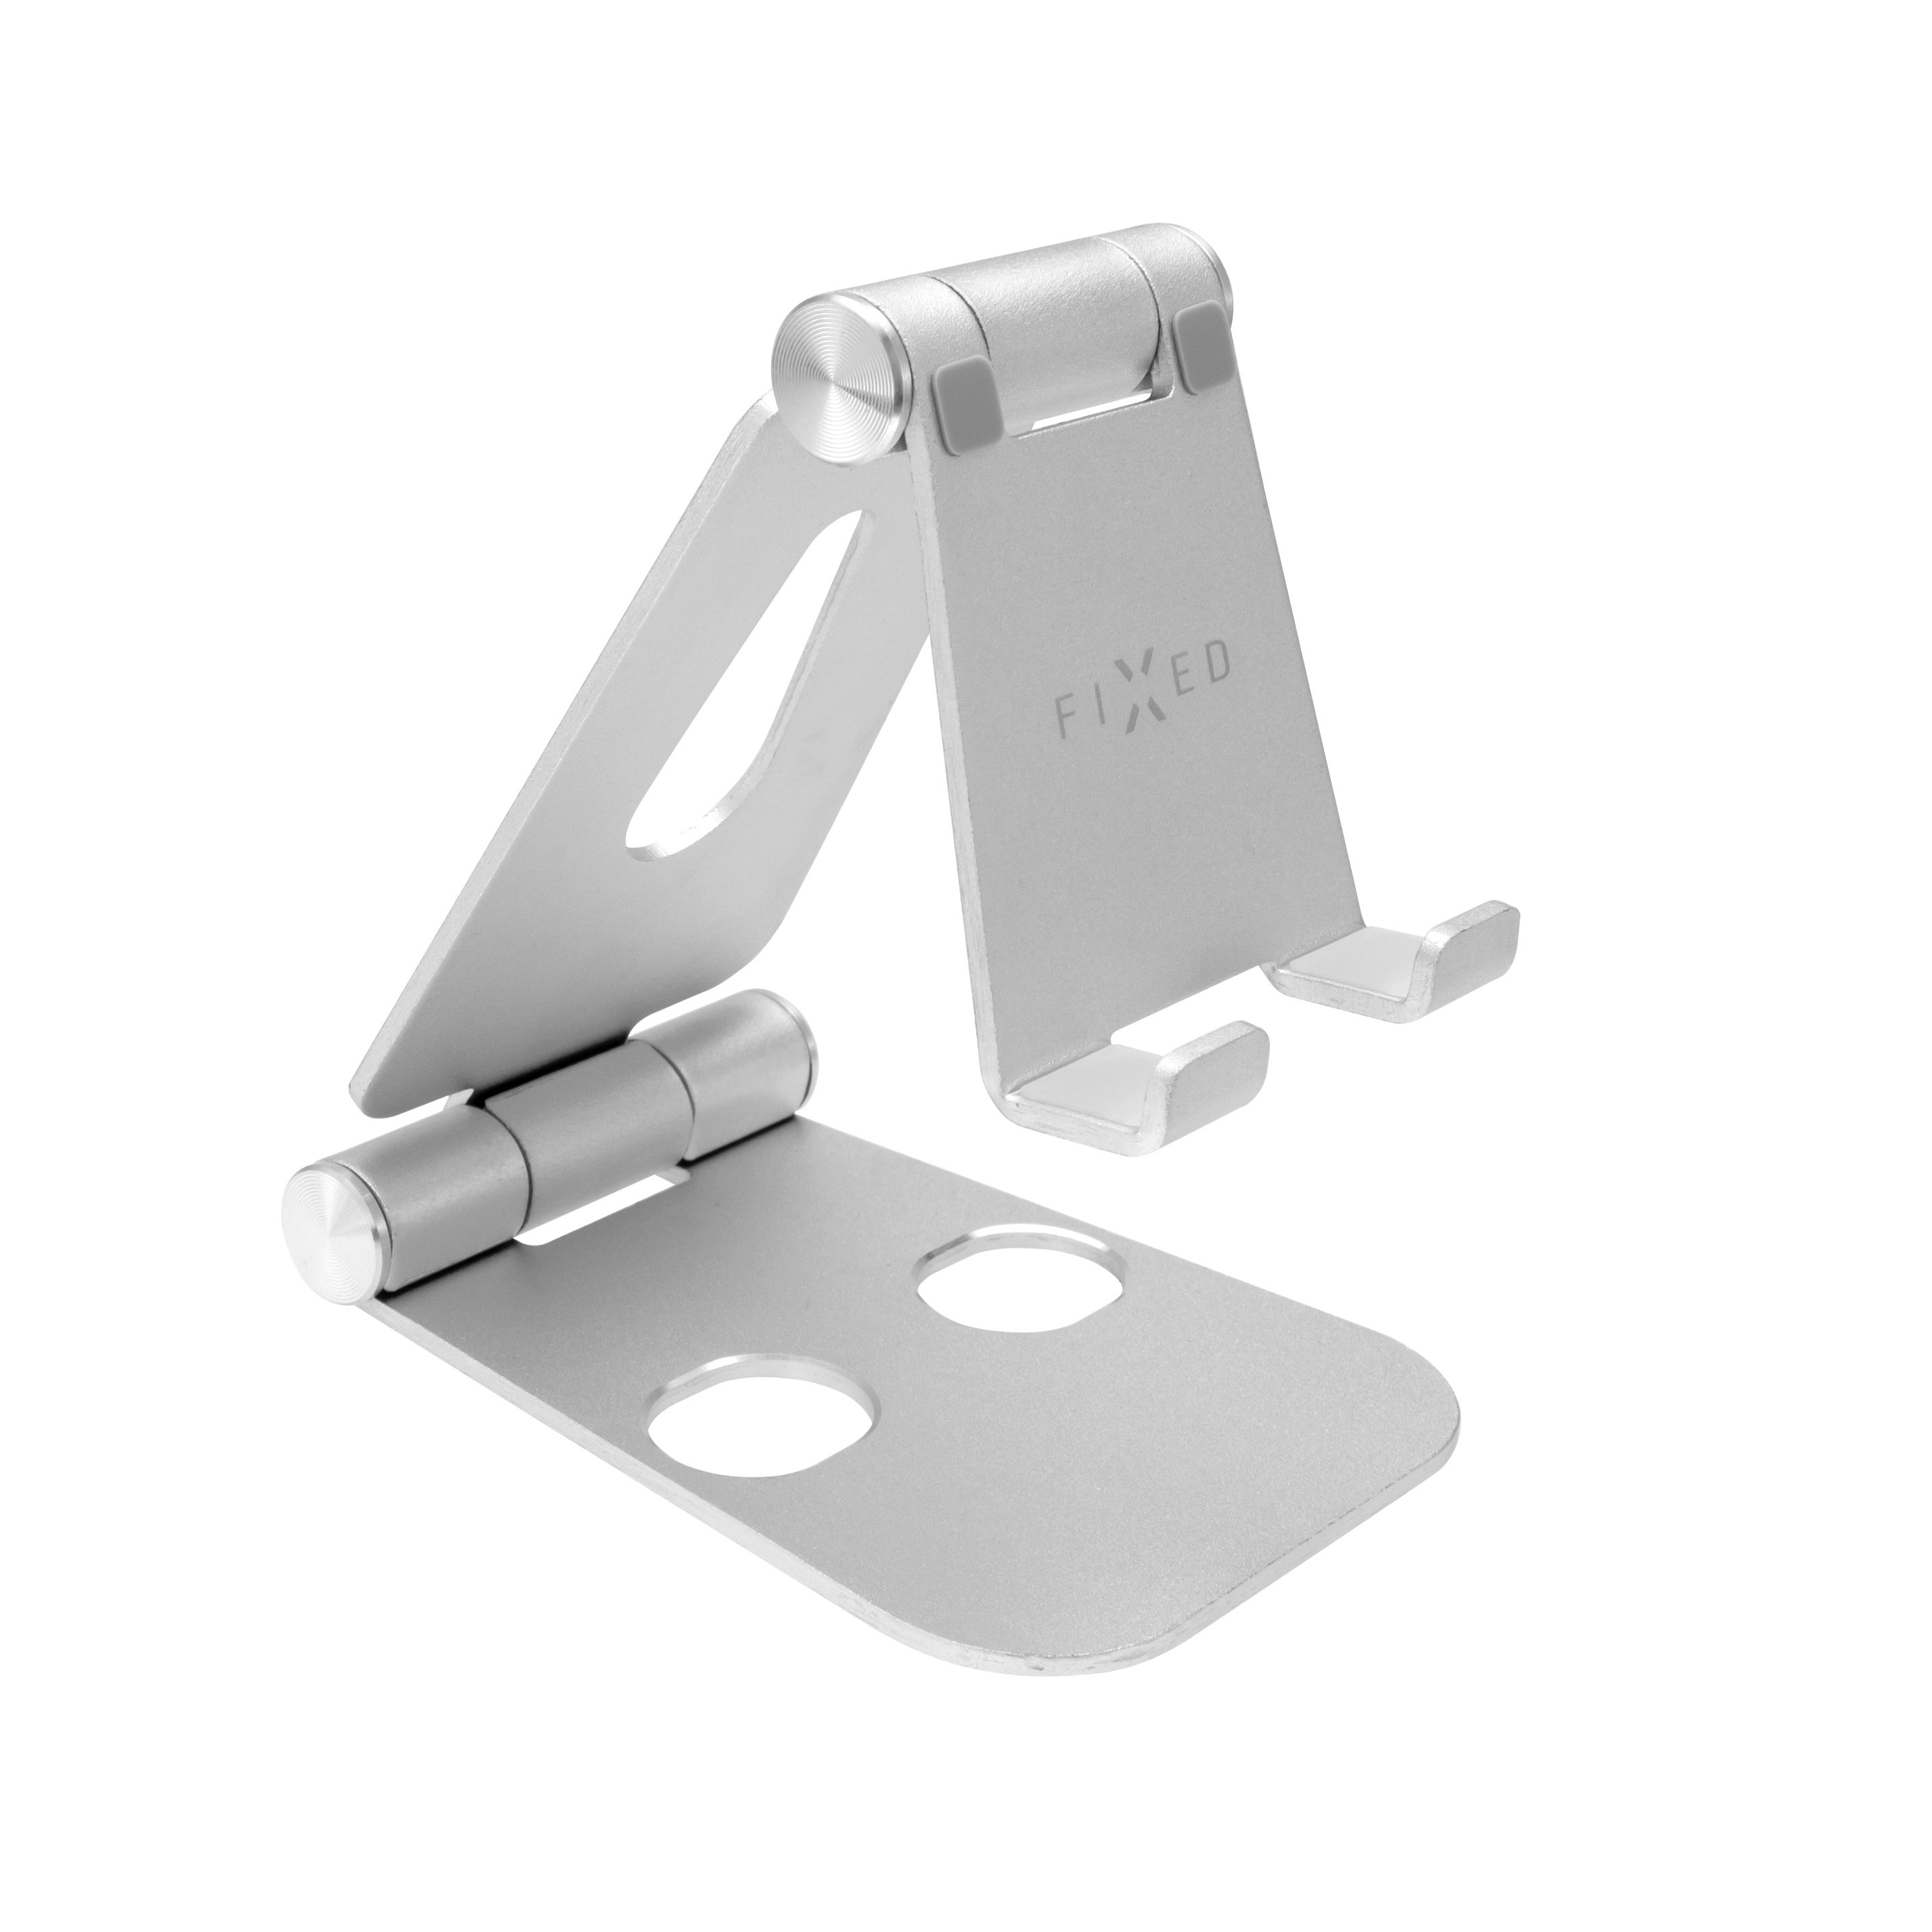 Hliníkový stojánek FIXED Frame PHONE na stůl pro mobilní telefony, stříbrný